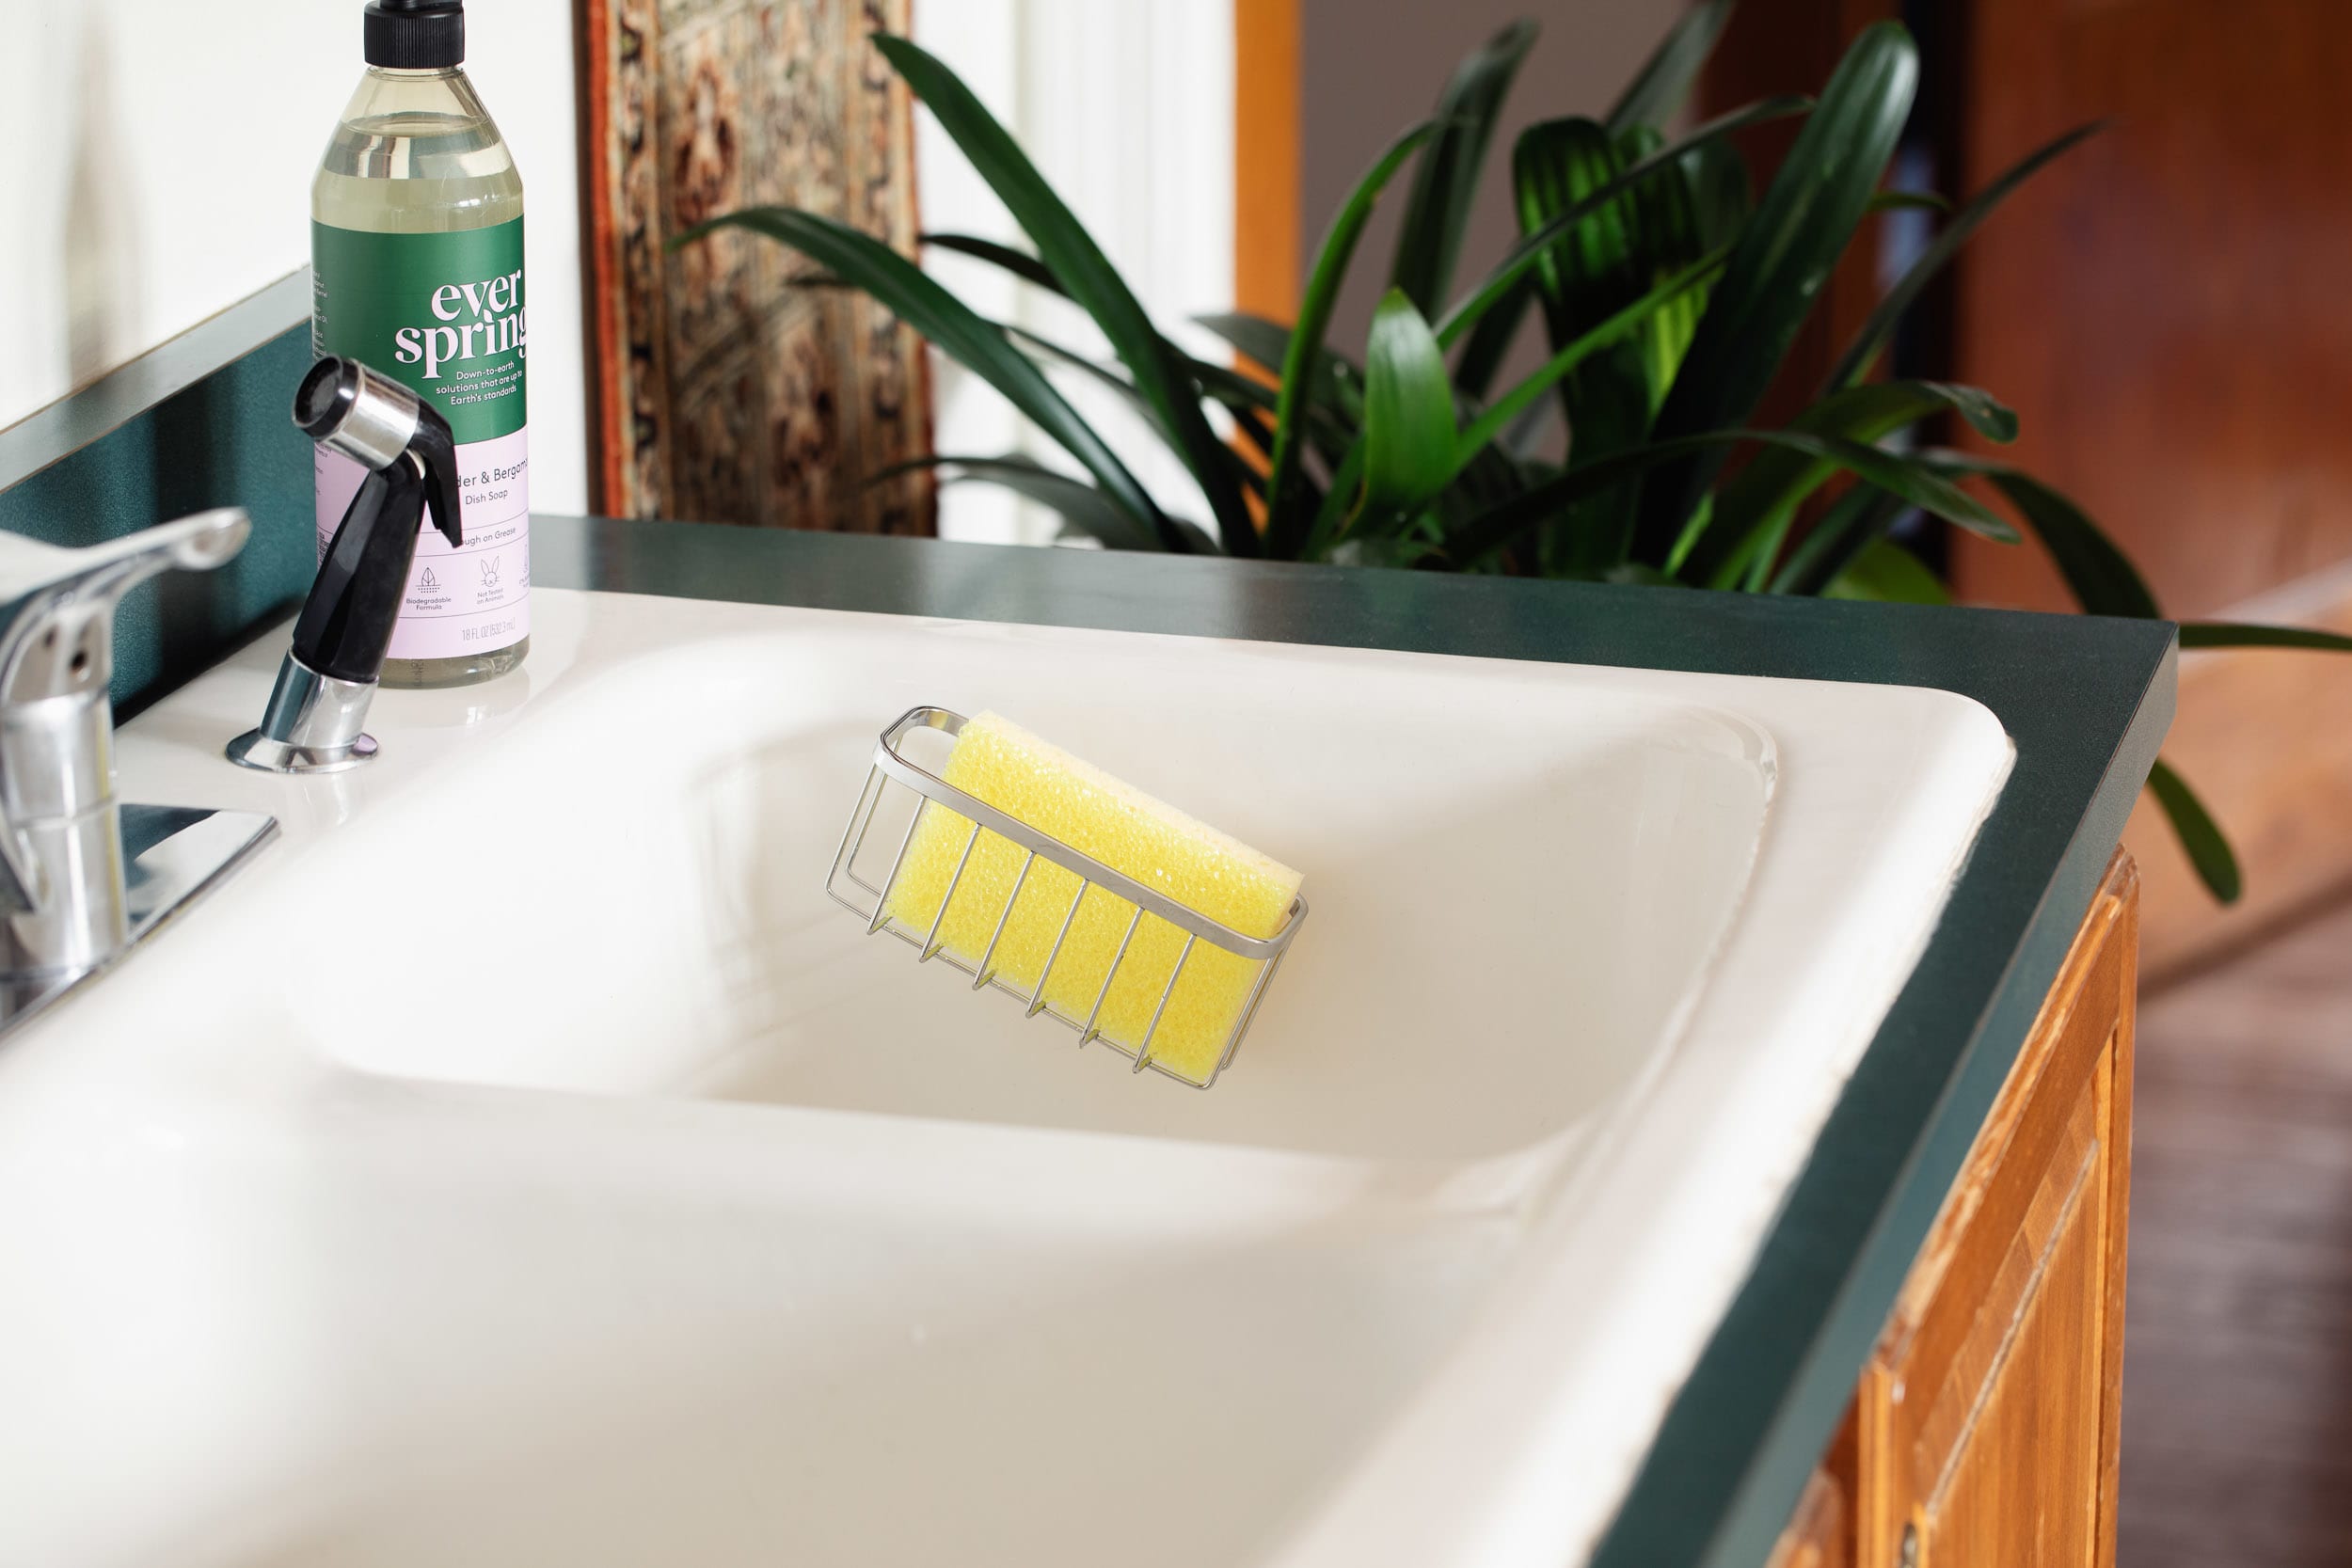 Kitchen Sink Sponge Cloth Basket With Dishwashing Liquid Bottle, Countertop  Organizer